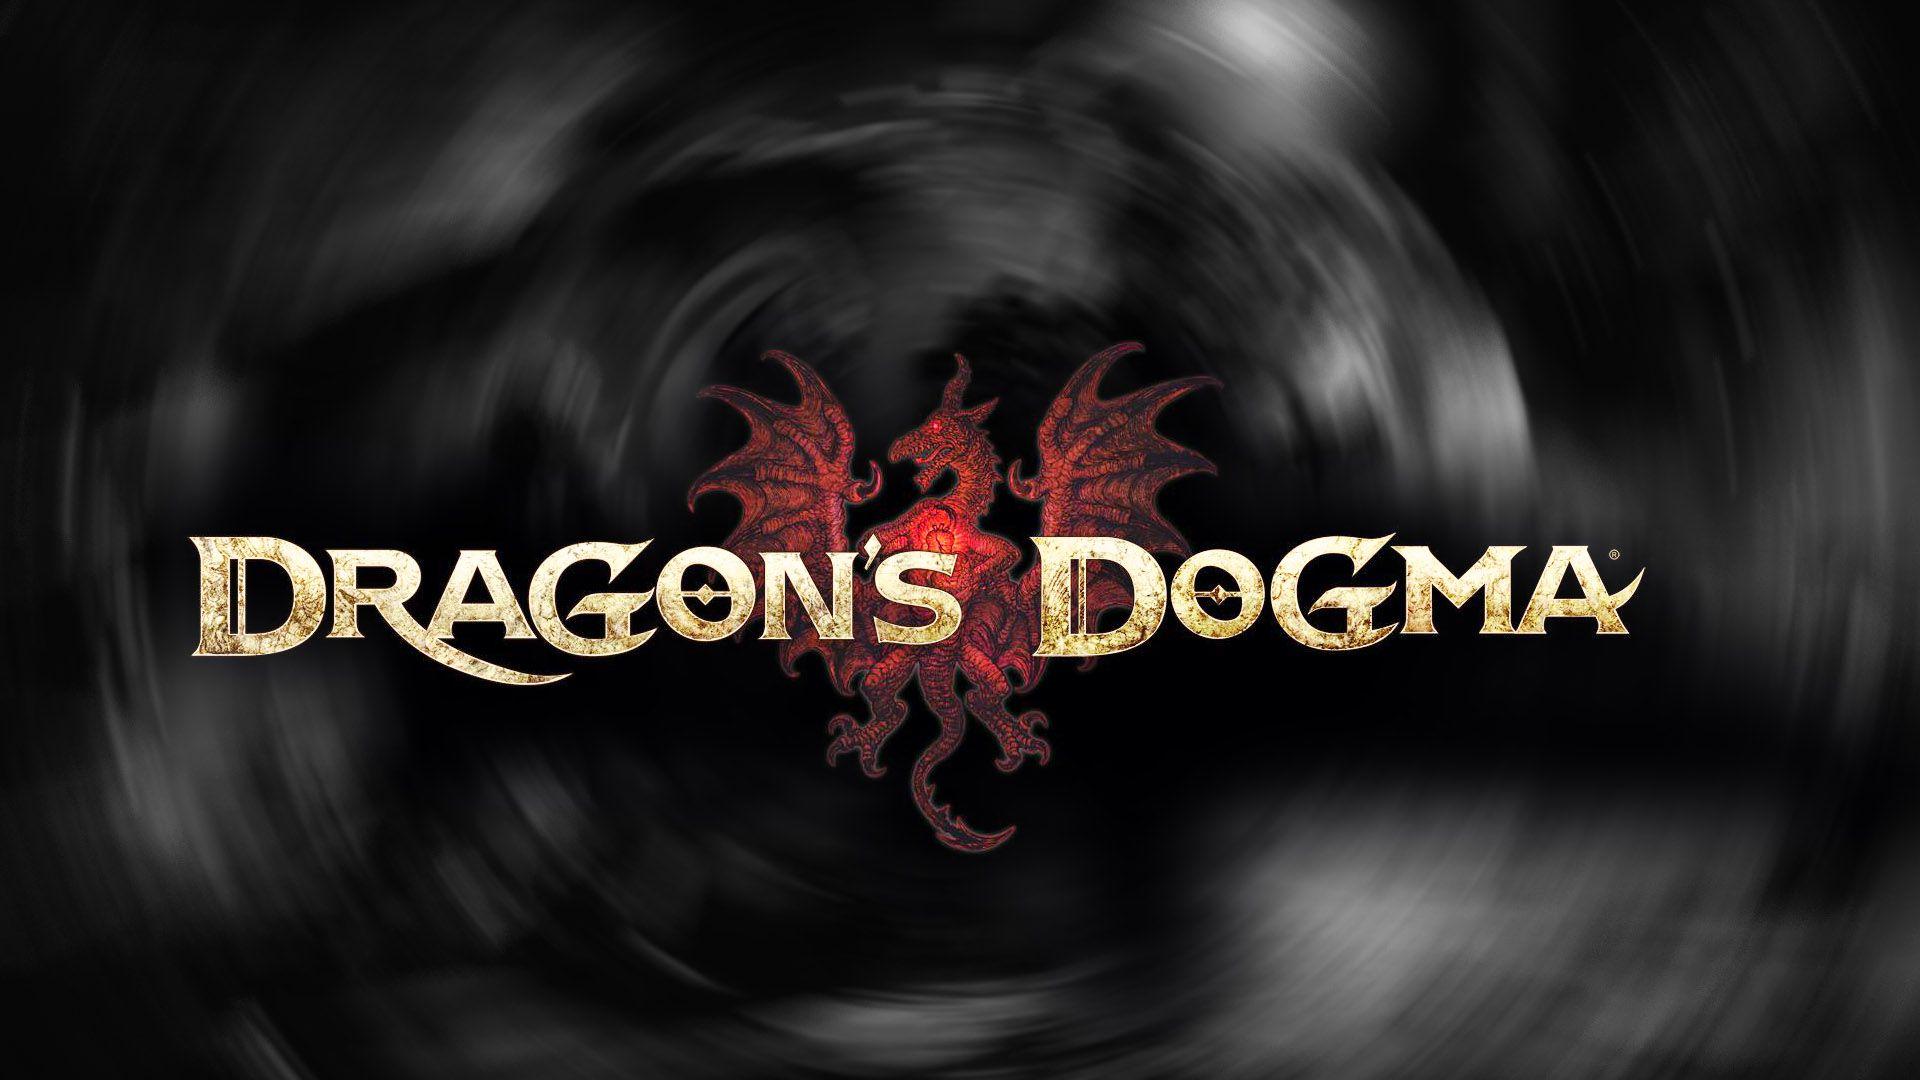 Dragons Dogma Wallpaper. Dragon's Dogma